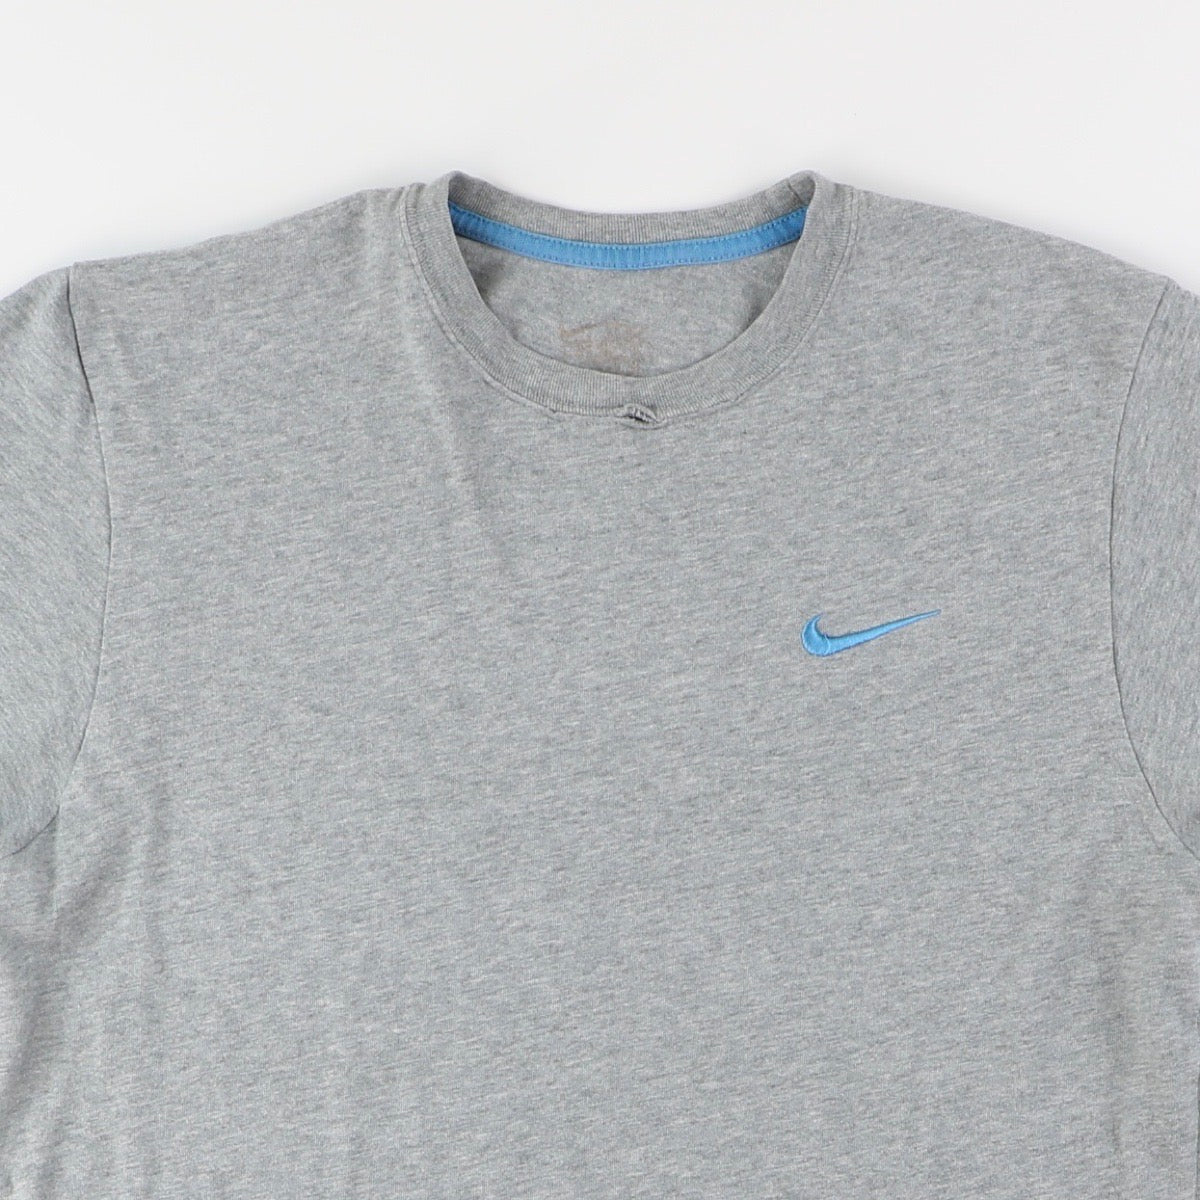 Nike Tshirt (S)